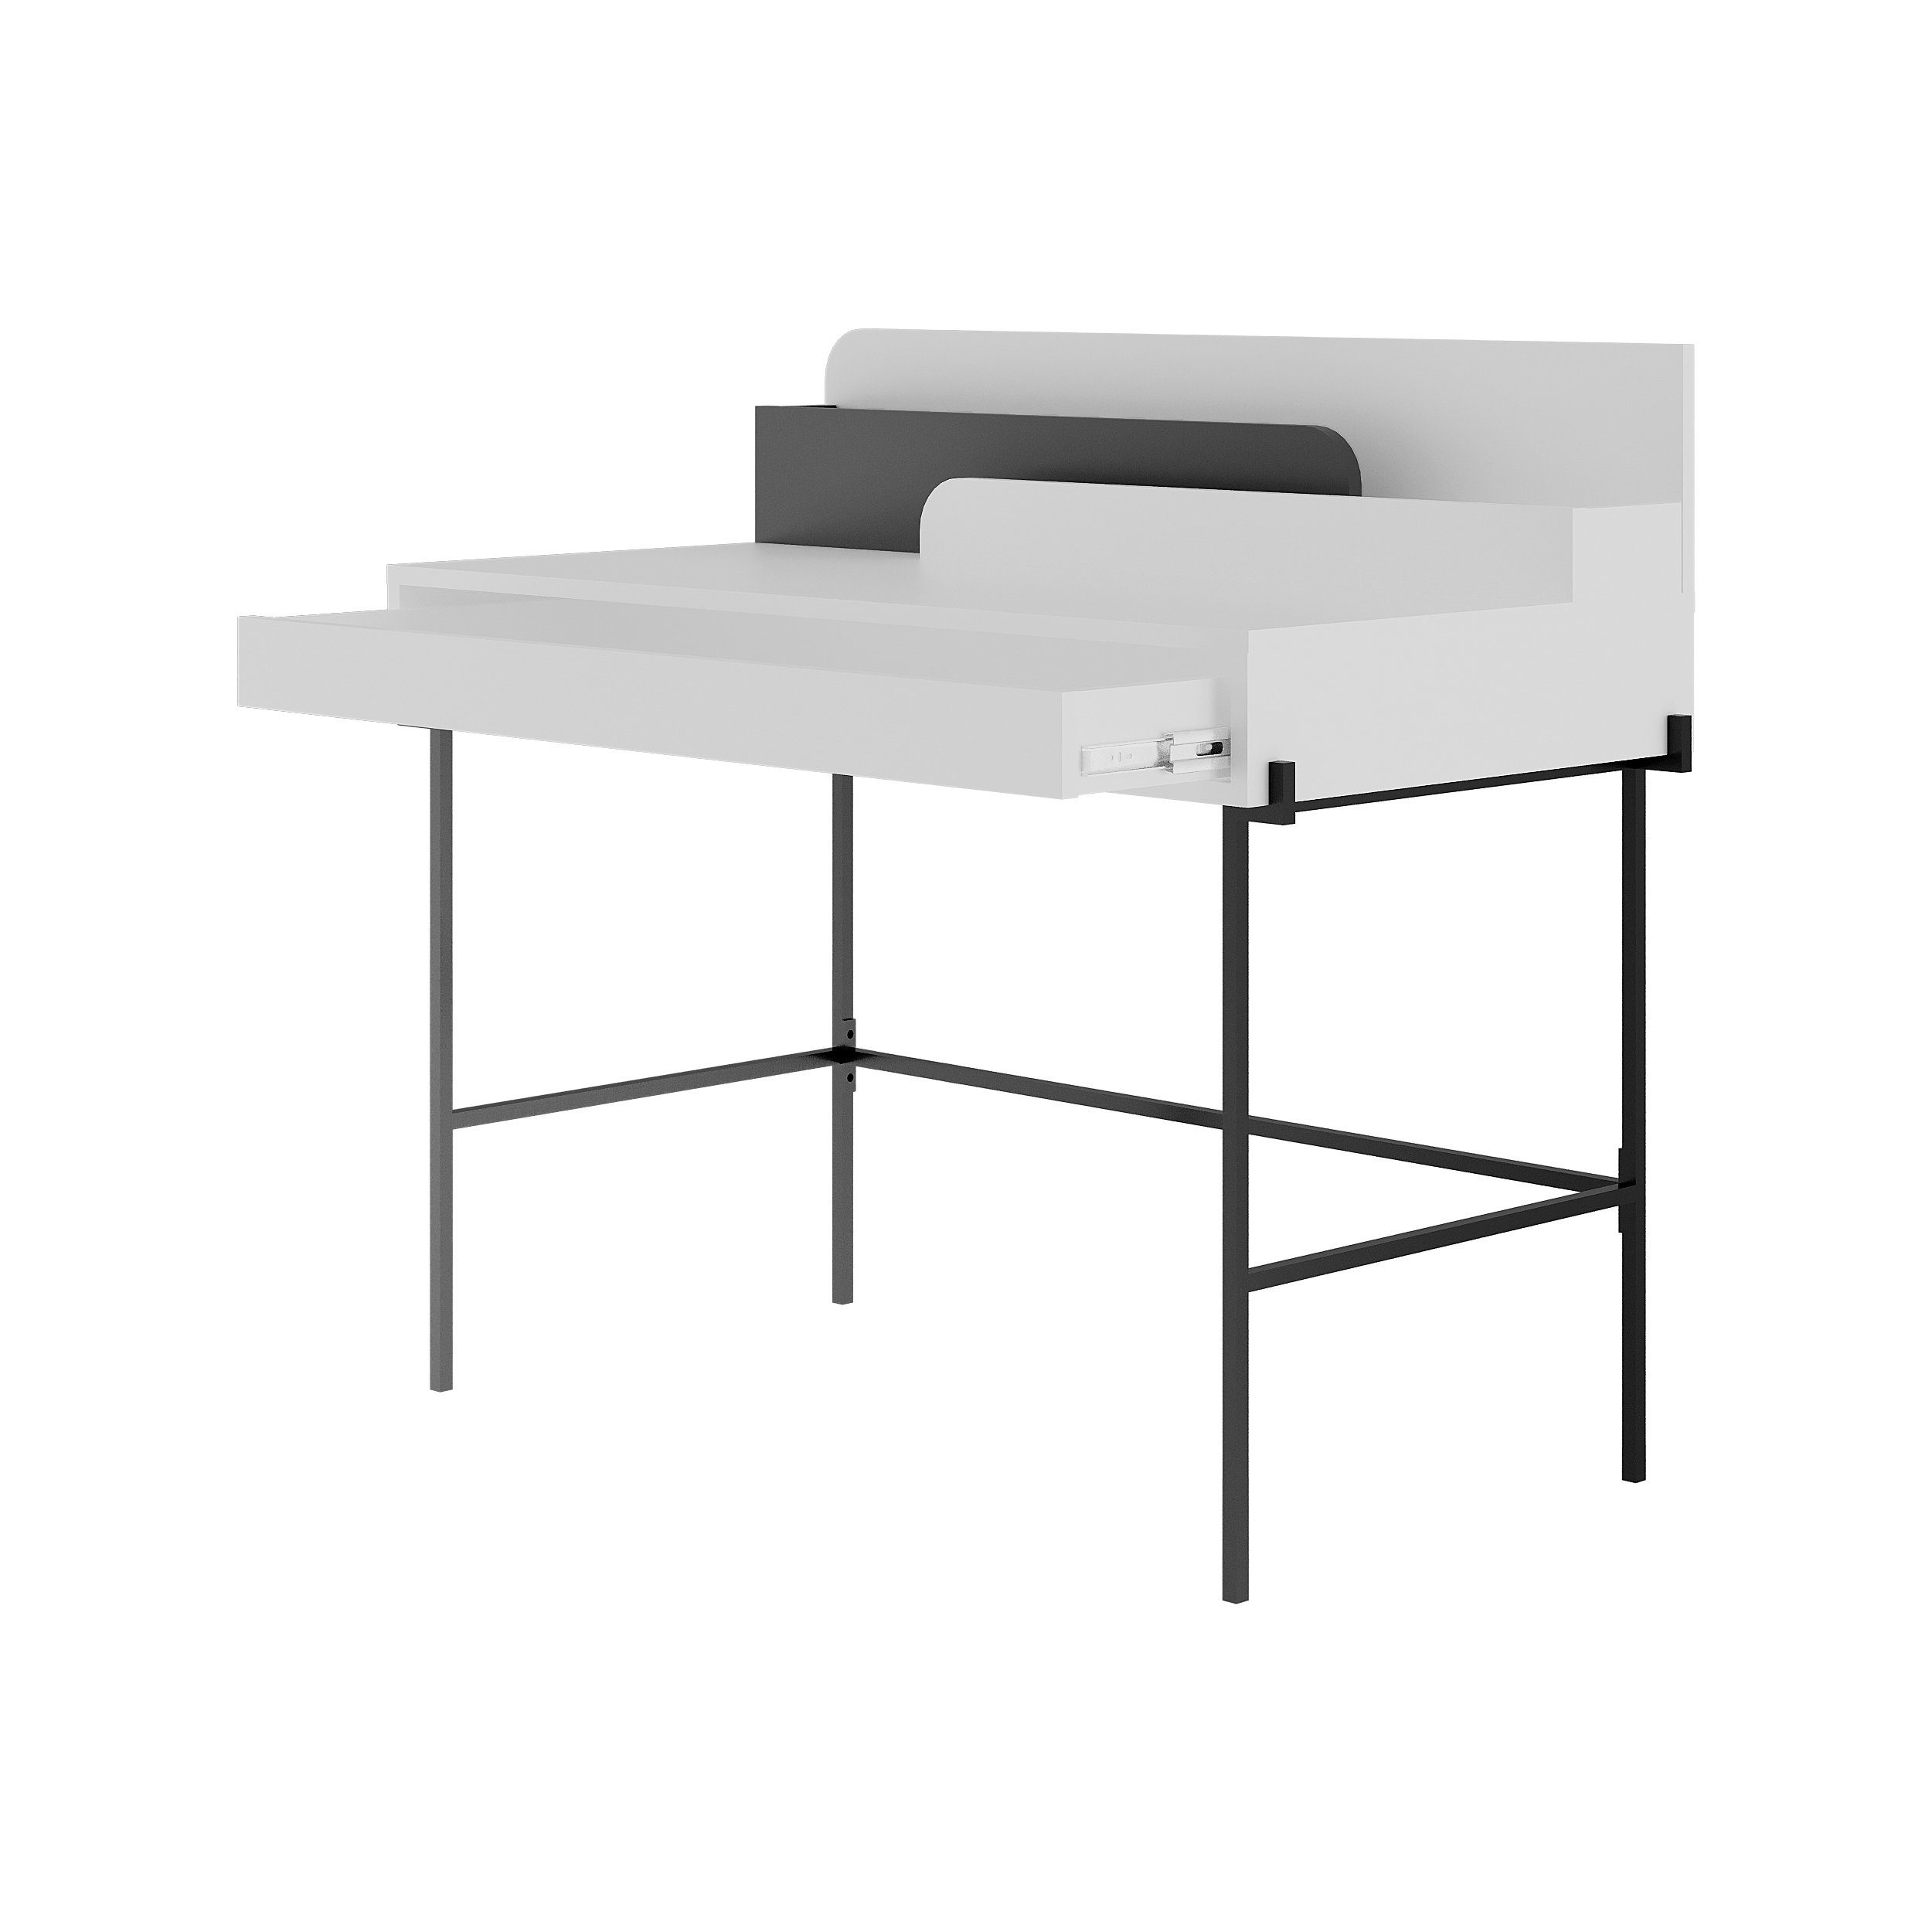 Arbeitstisch tisch), Moderner Decortie Arbeitstisch/Schreibtisch, 60 Weiß-Anthrazit x 110 (1 Leila x cm 101